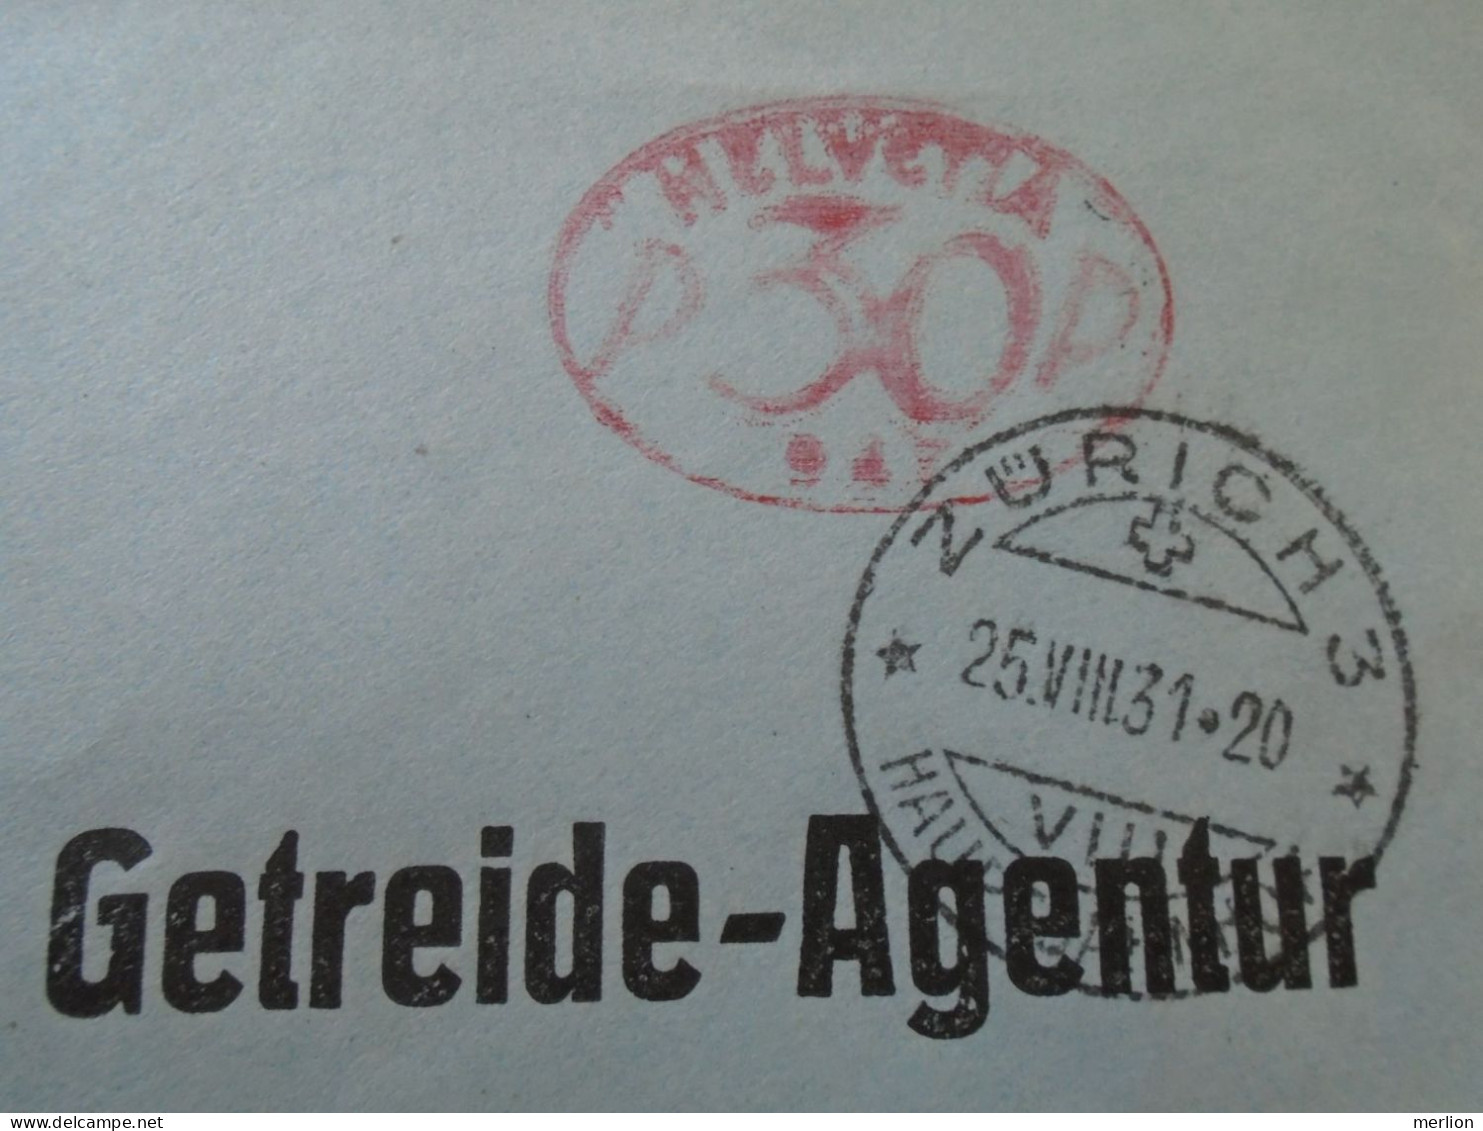 D194027  COVER - Switzerland  Suisse 1931 EMA  Postage Red Meter Stamp - Zürich Hauptbahnhof - Rózsa Farkas Budapest - Frankiermaschinen (FraMA)